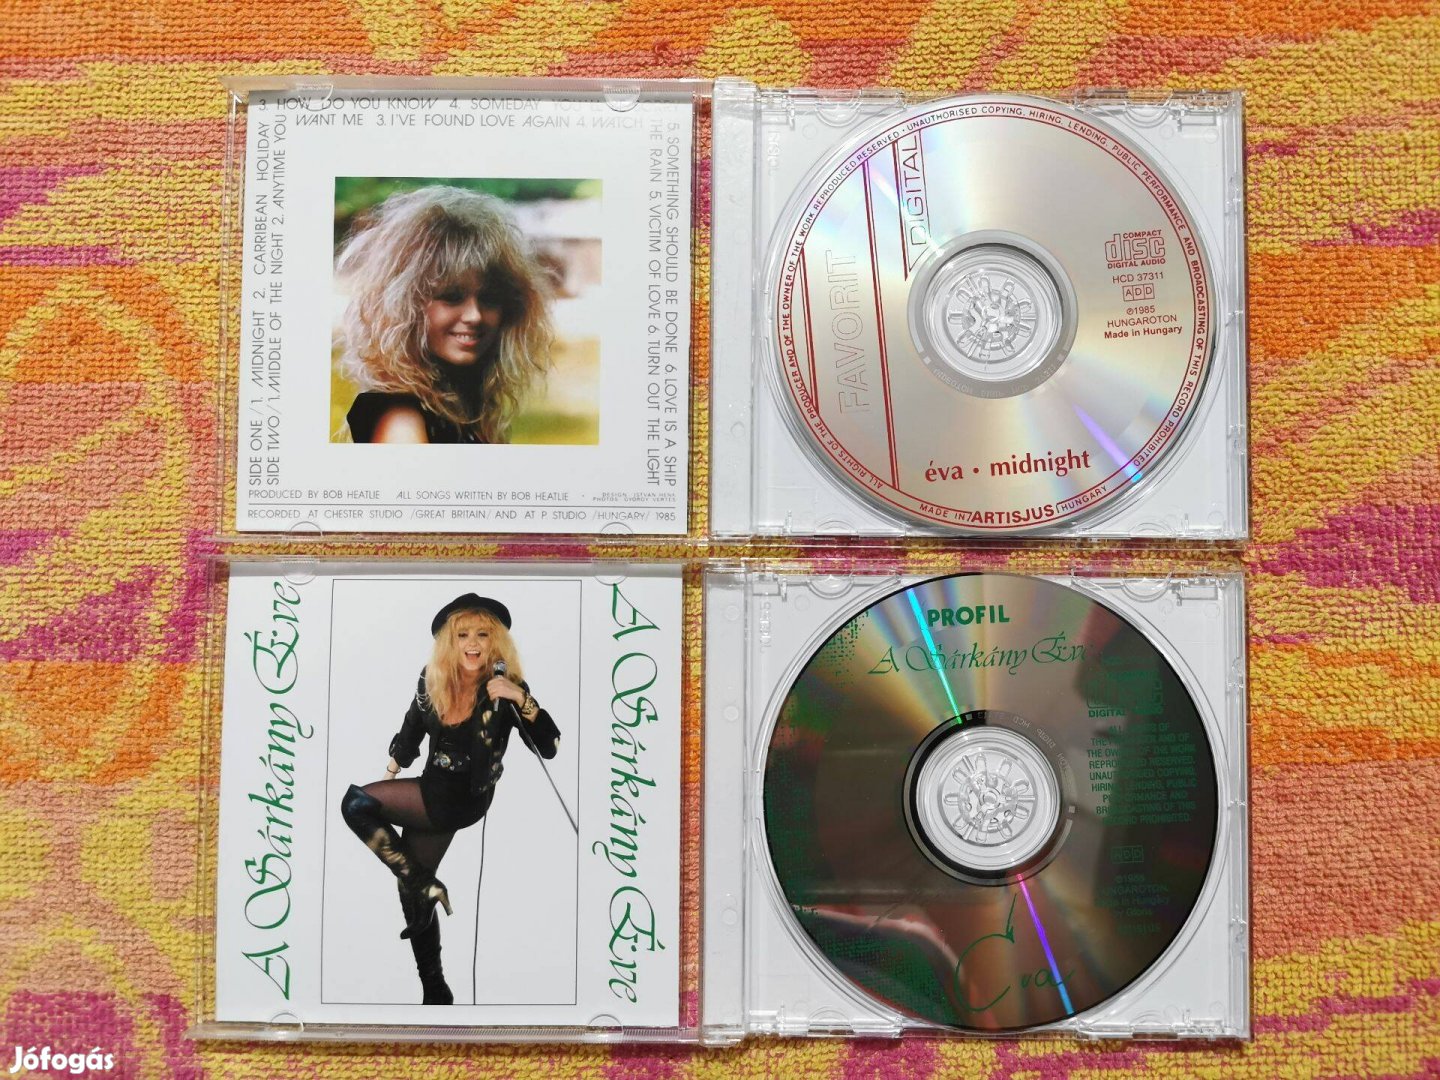 Neoton - Csepregi éva CD lemezek: 5 db